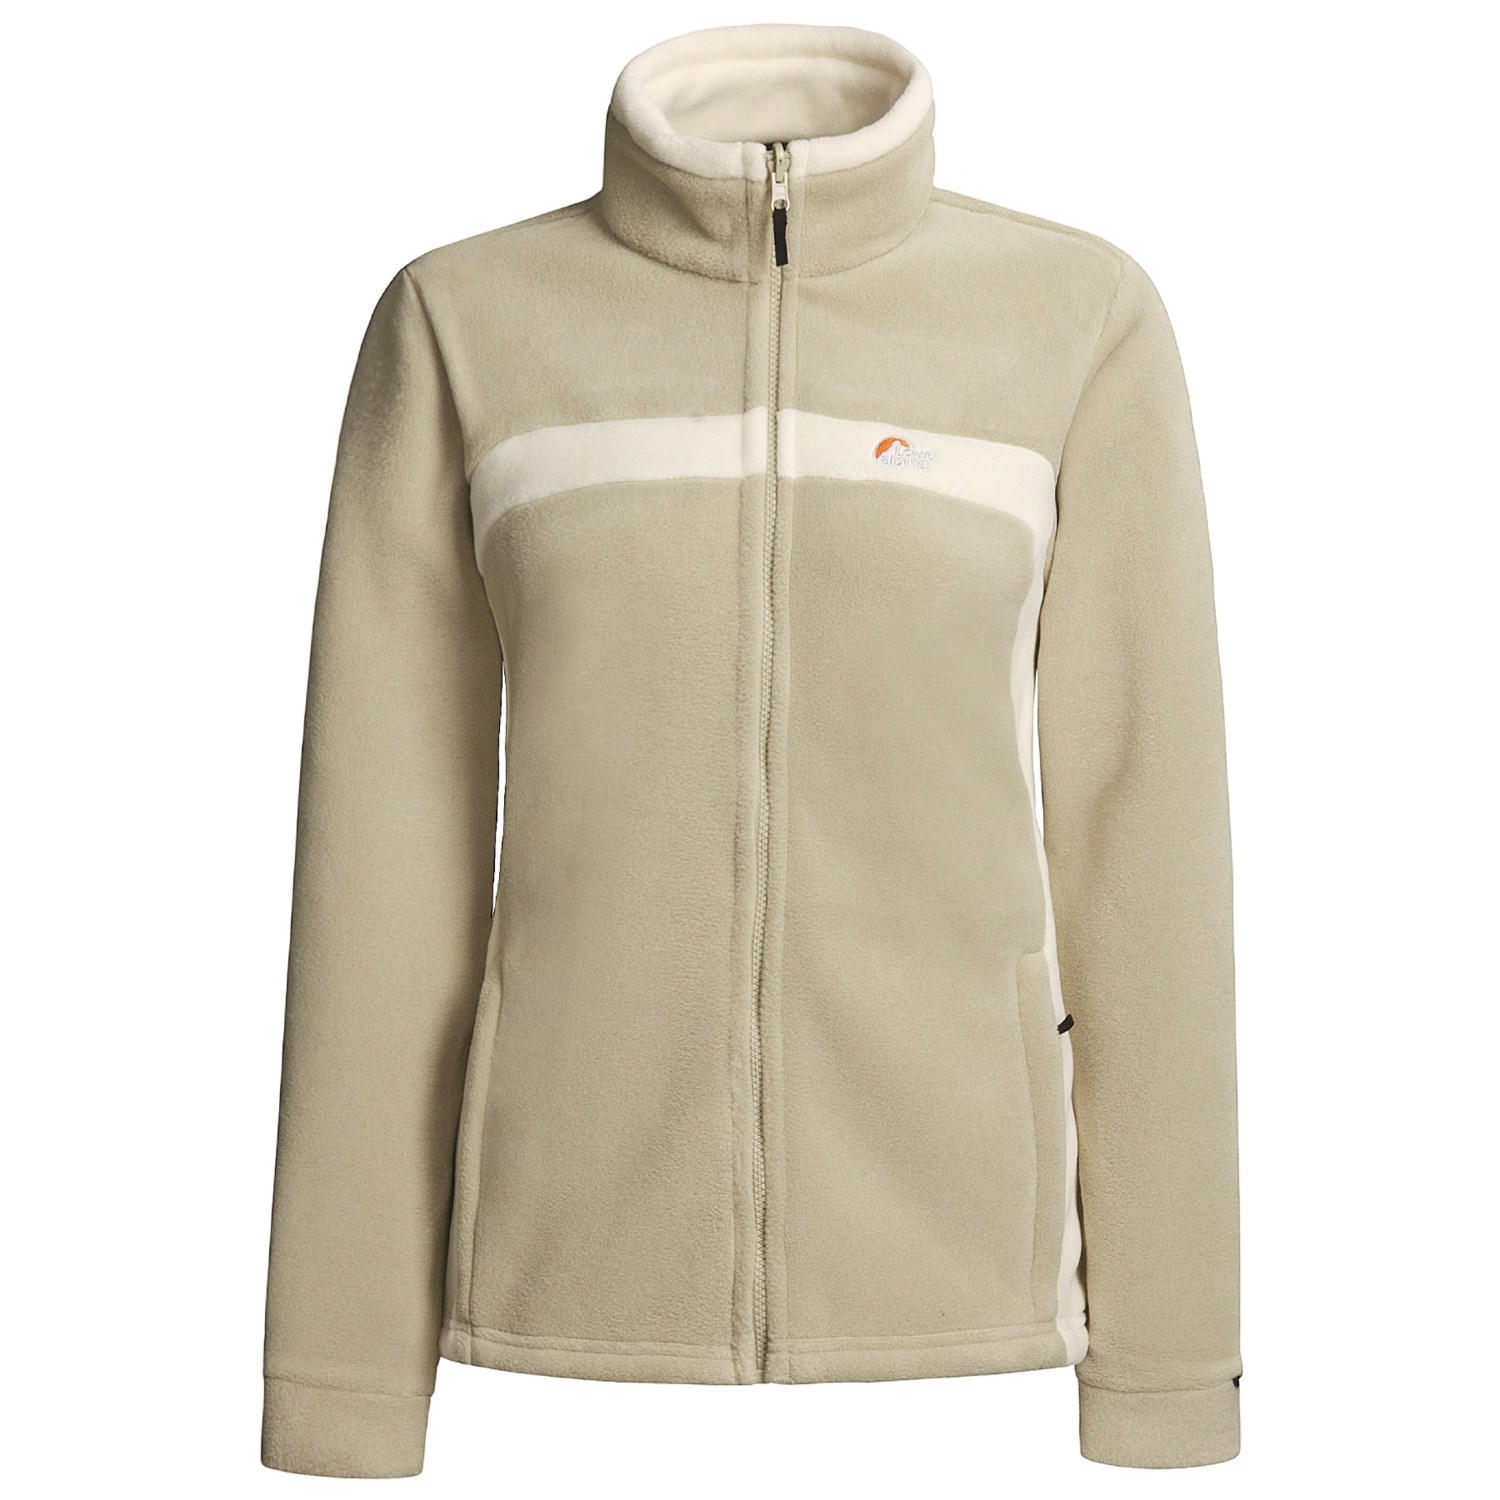 Lowe Alpine Nepal Fleece Jacket (For Women) 96793 - Save 40%